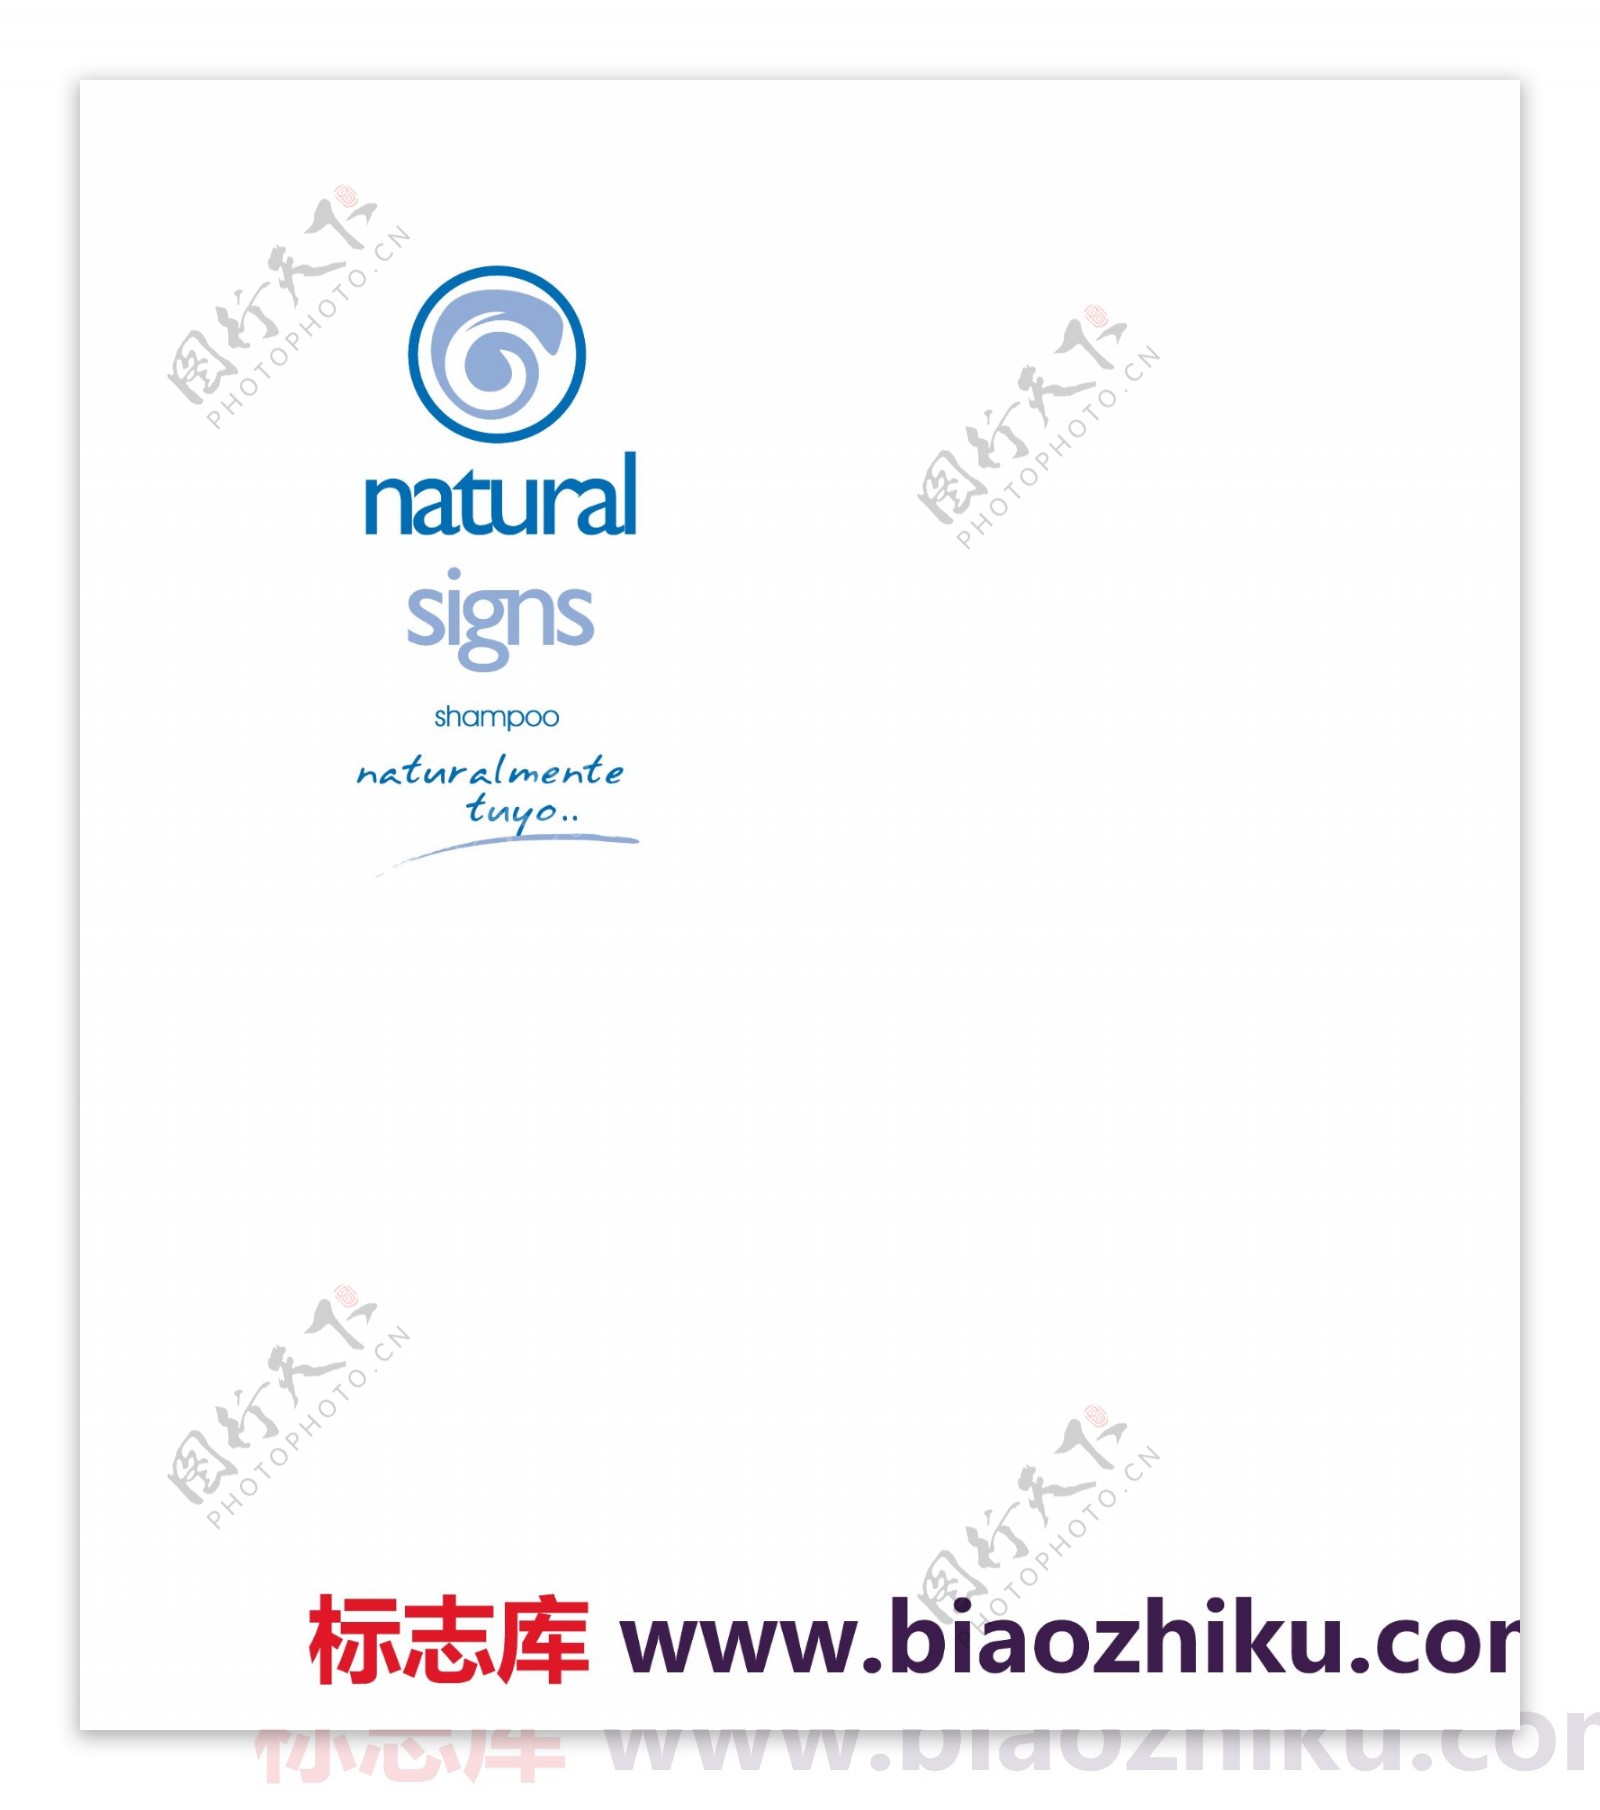 naturalsignslogo设计欣赏naturalsigns洗护品标志下载标志设计欣赏